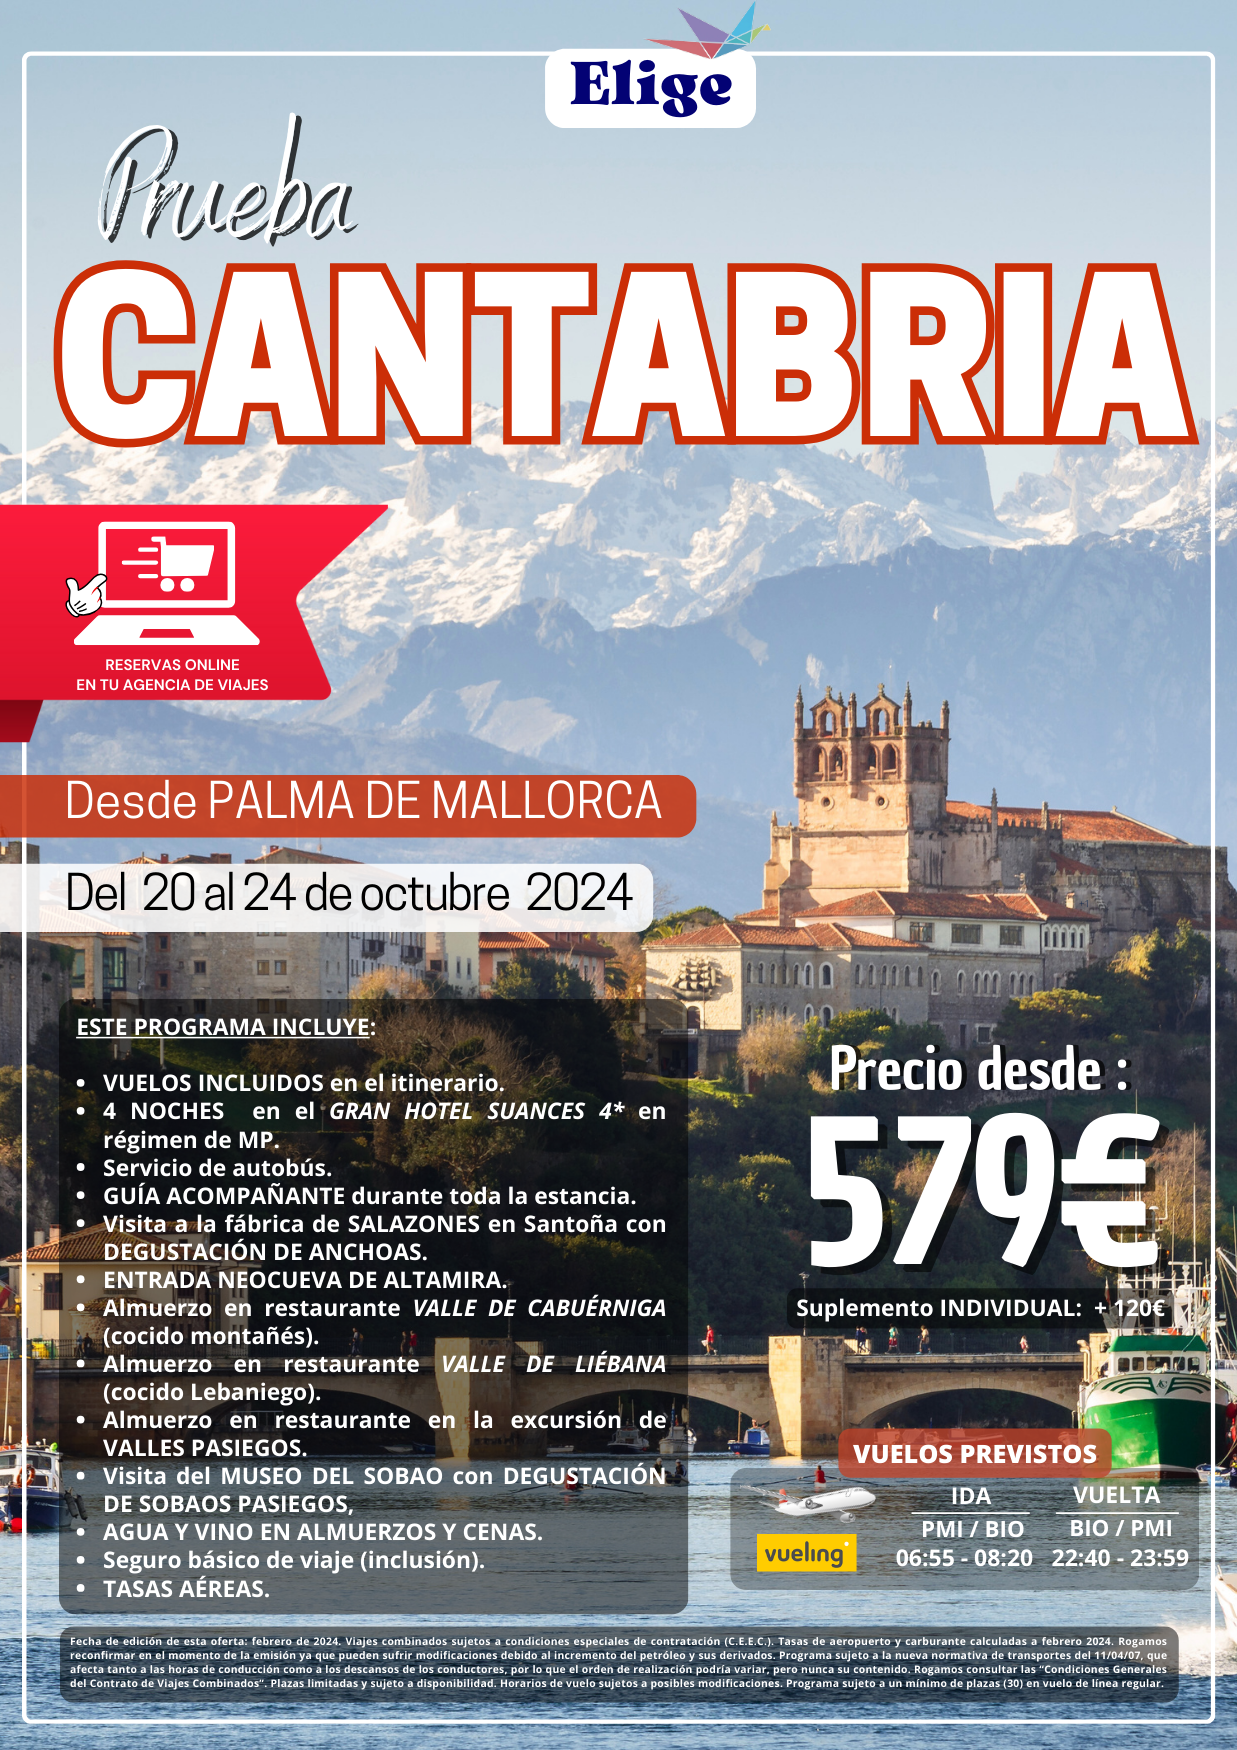 Prueba Cantabria Octubre 2024, con hotel 4 estrellas, traslados, visitas,  guía acompañante, agua y vino en almuerzos y cenas, para Agencias de Viajes con Elige Tu Viaje.